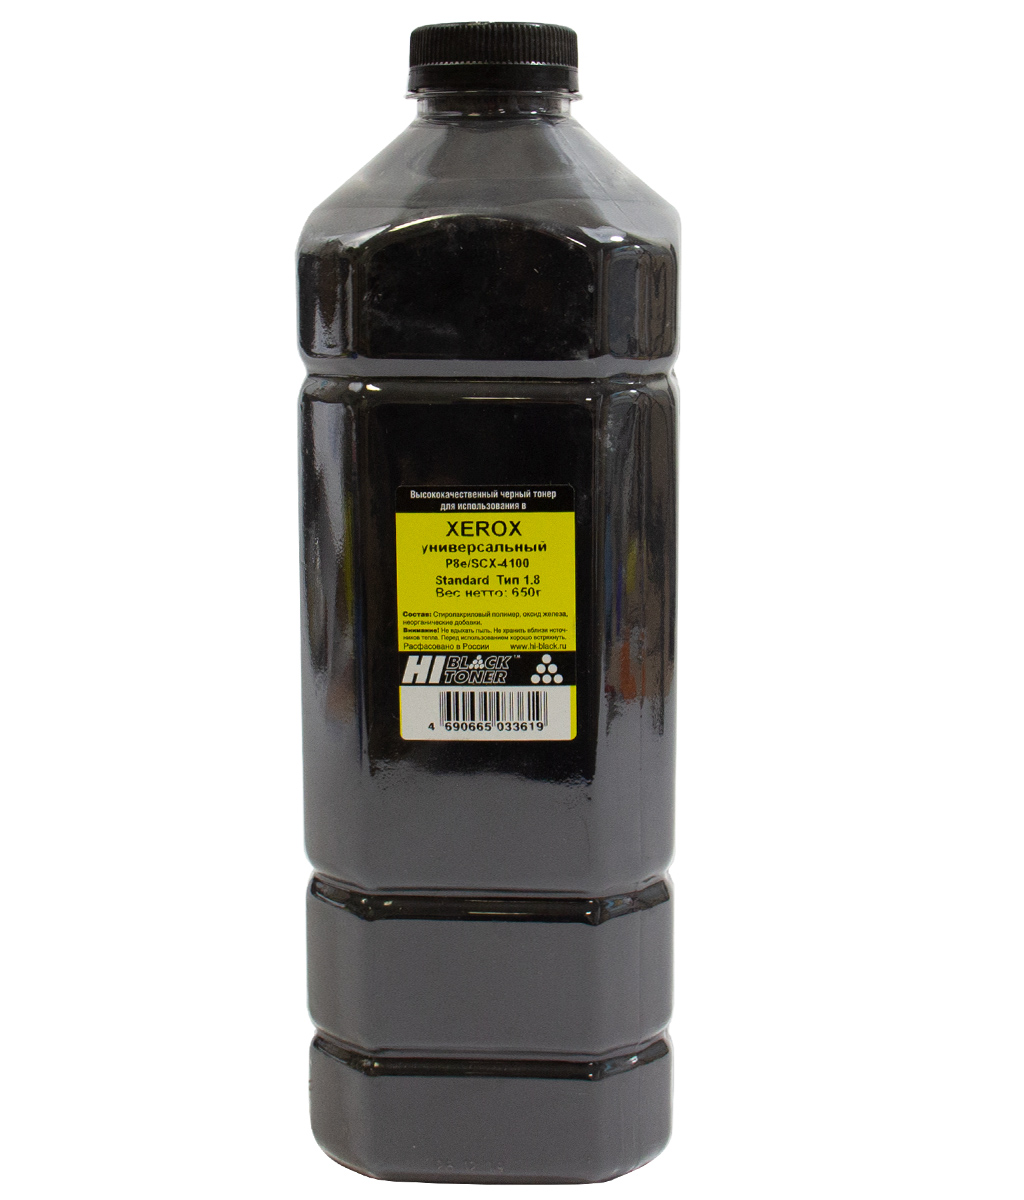 Тонер универсальный Hi-Black (109R00639) для Xerox Р8e/ Samsung SCX-4100, Standard, Тип 1.8, чёрный (650 гр.)